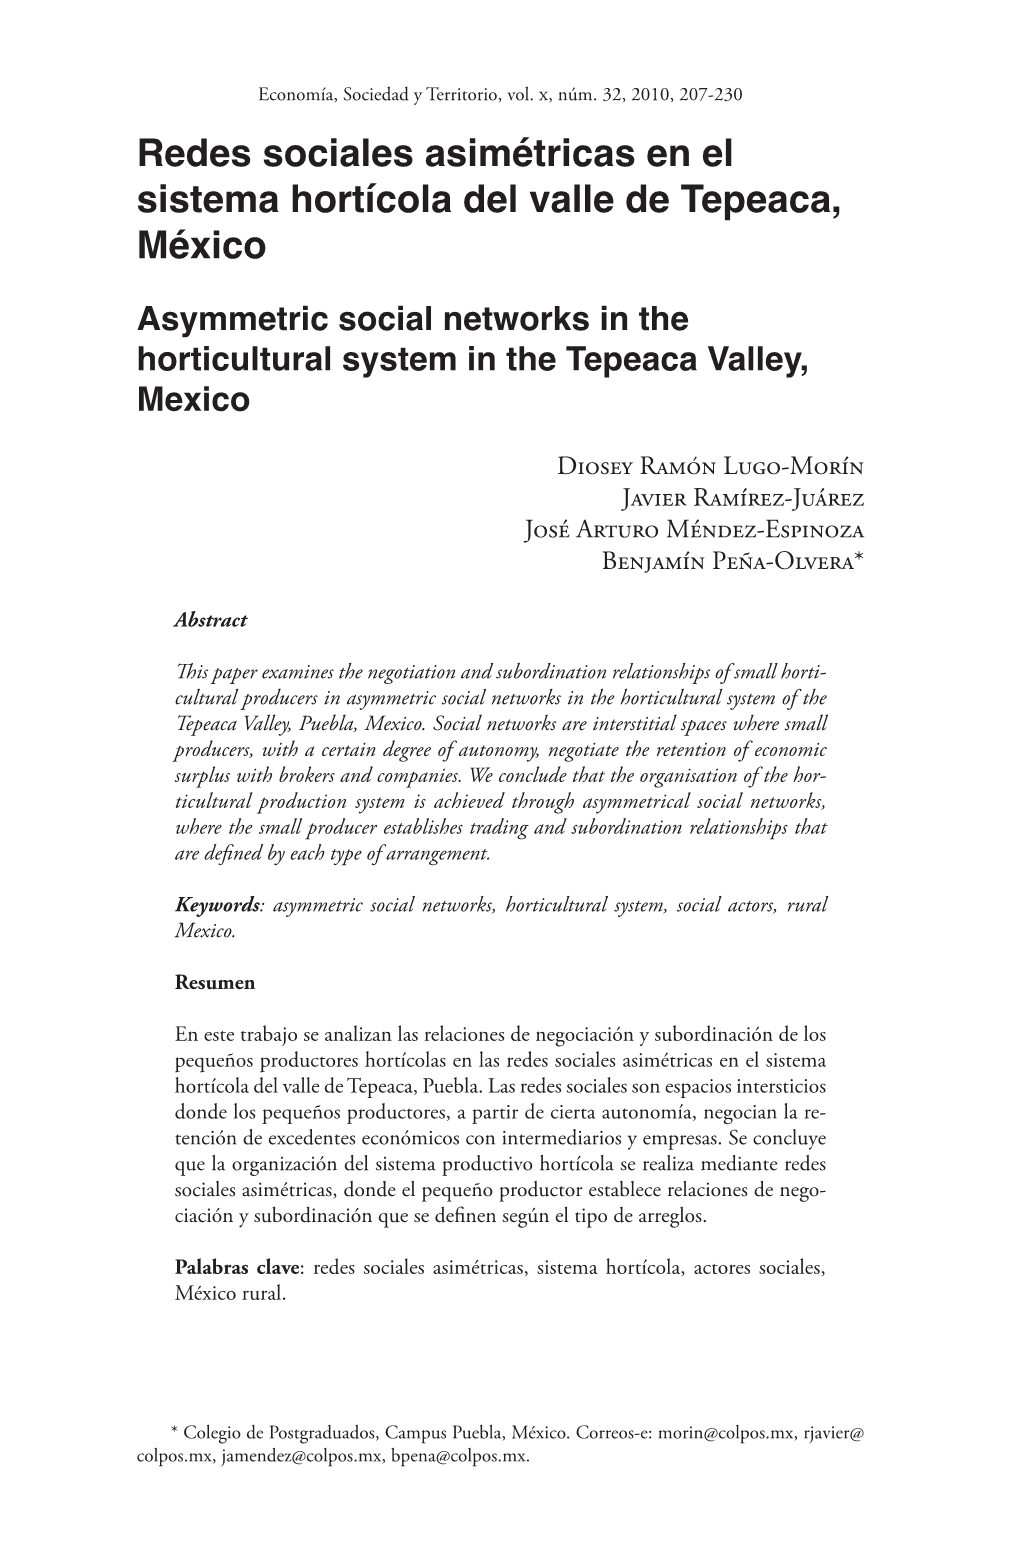 Redes Sociales Asimétricas En El Sistema Hortícola Del Valle De Tepeaca, México